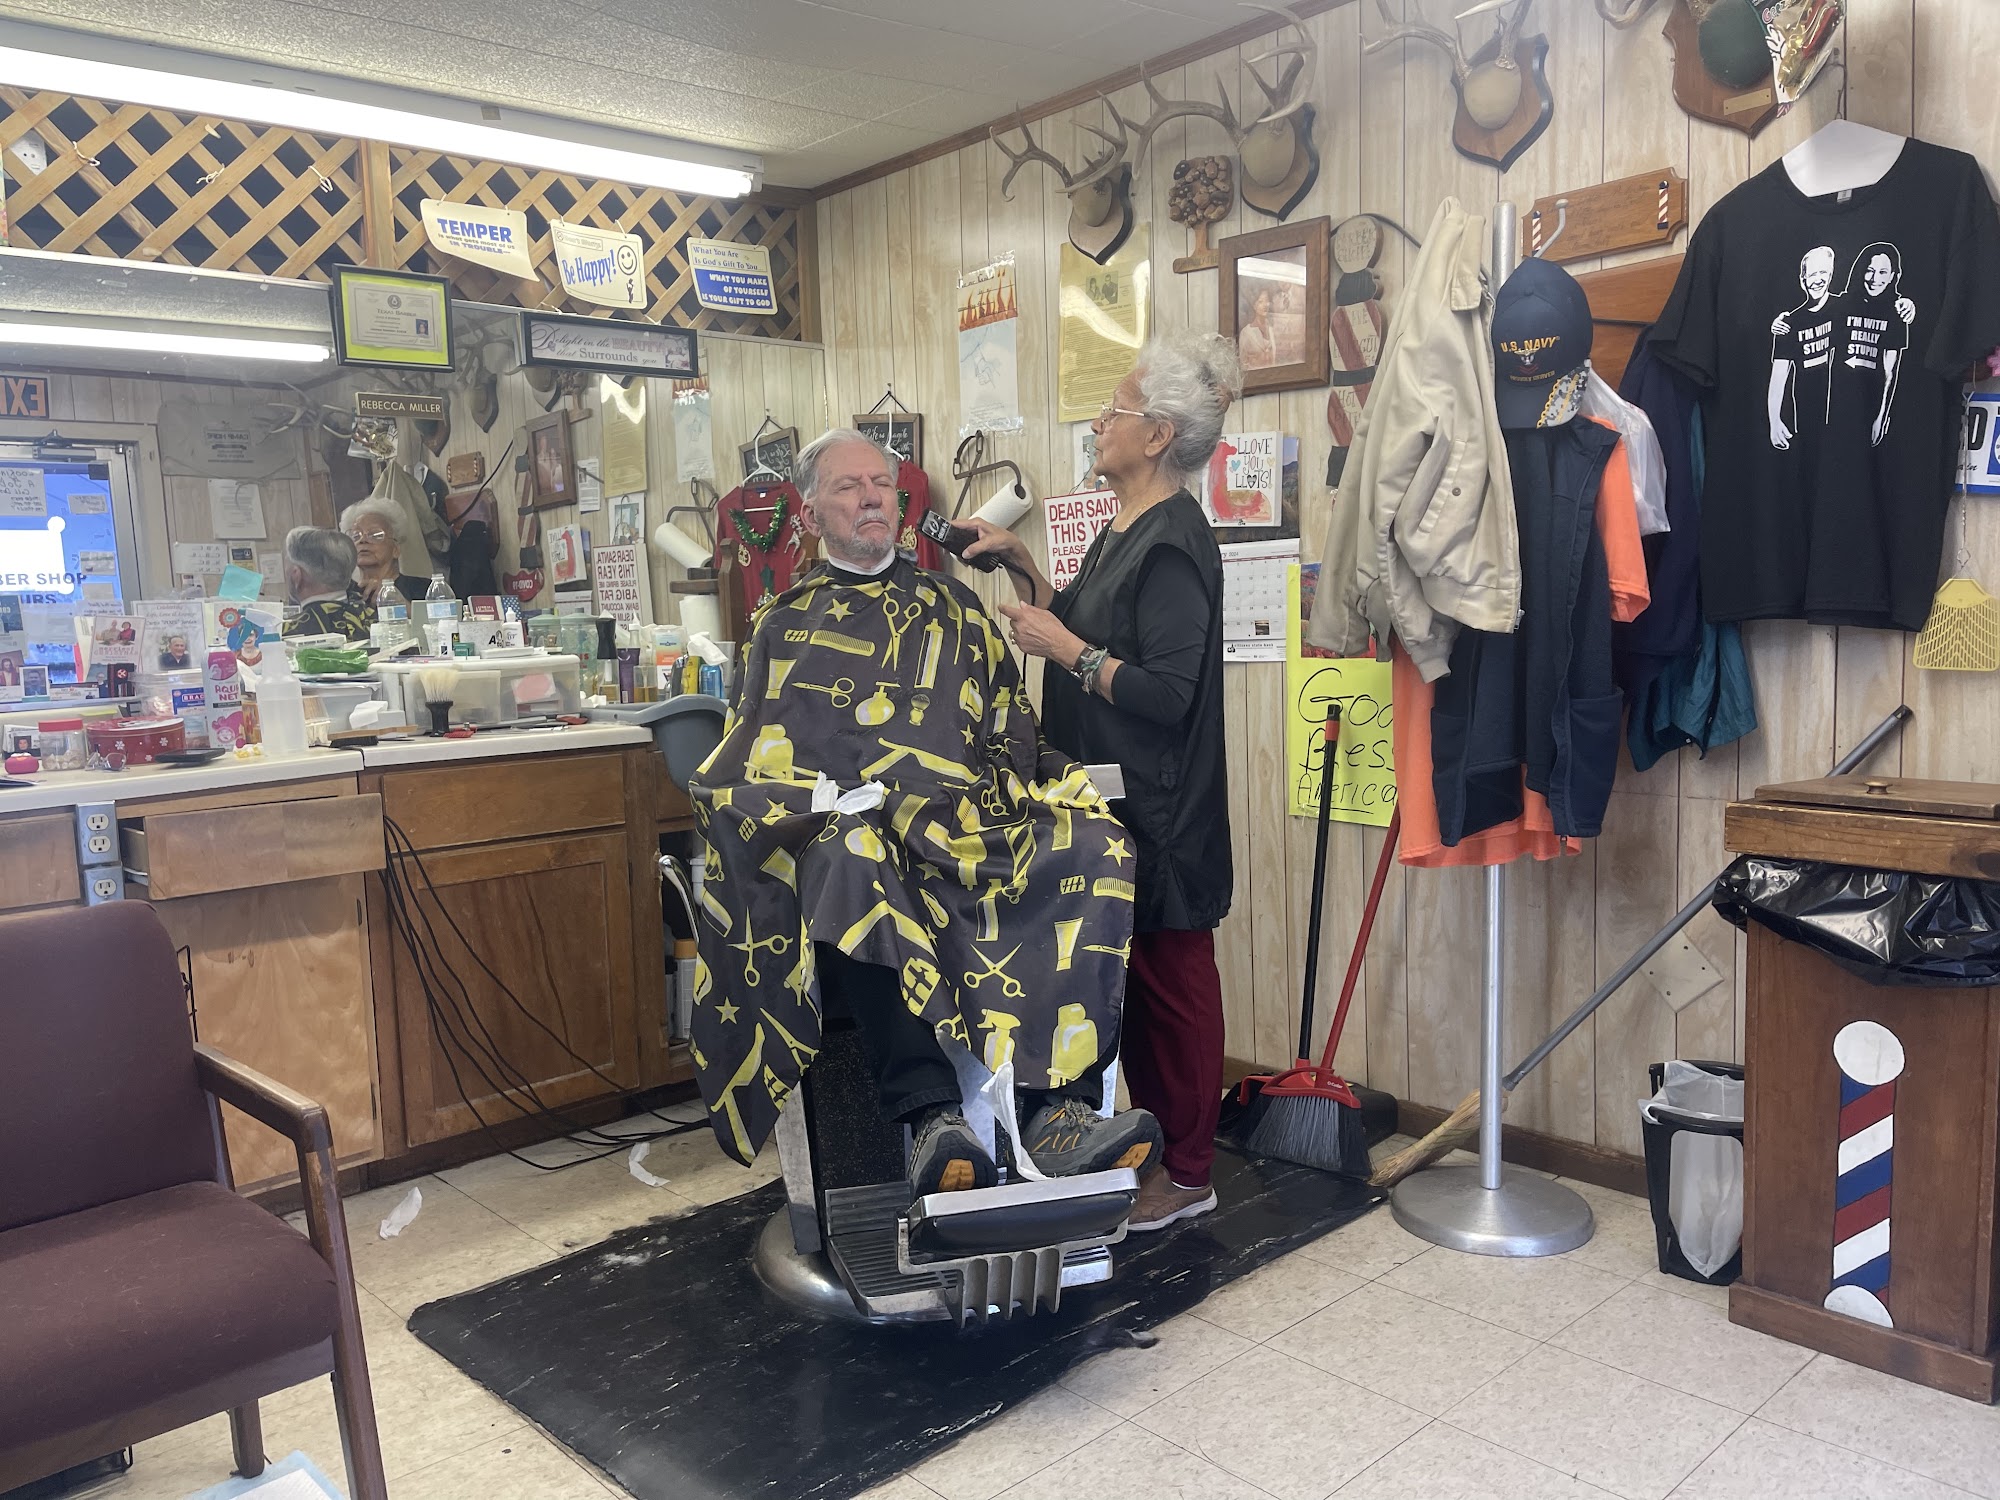 Miller's Barber Shop